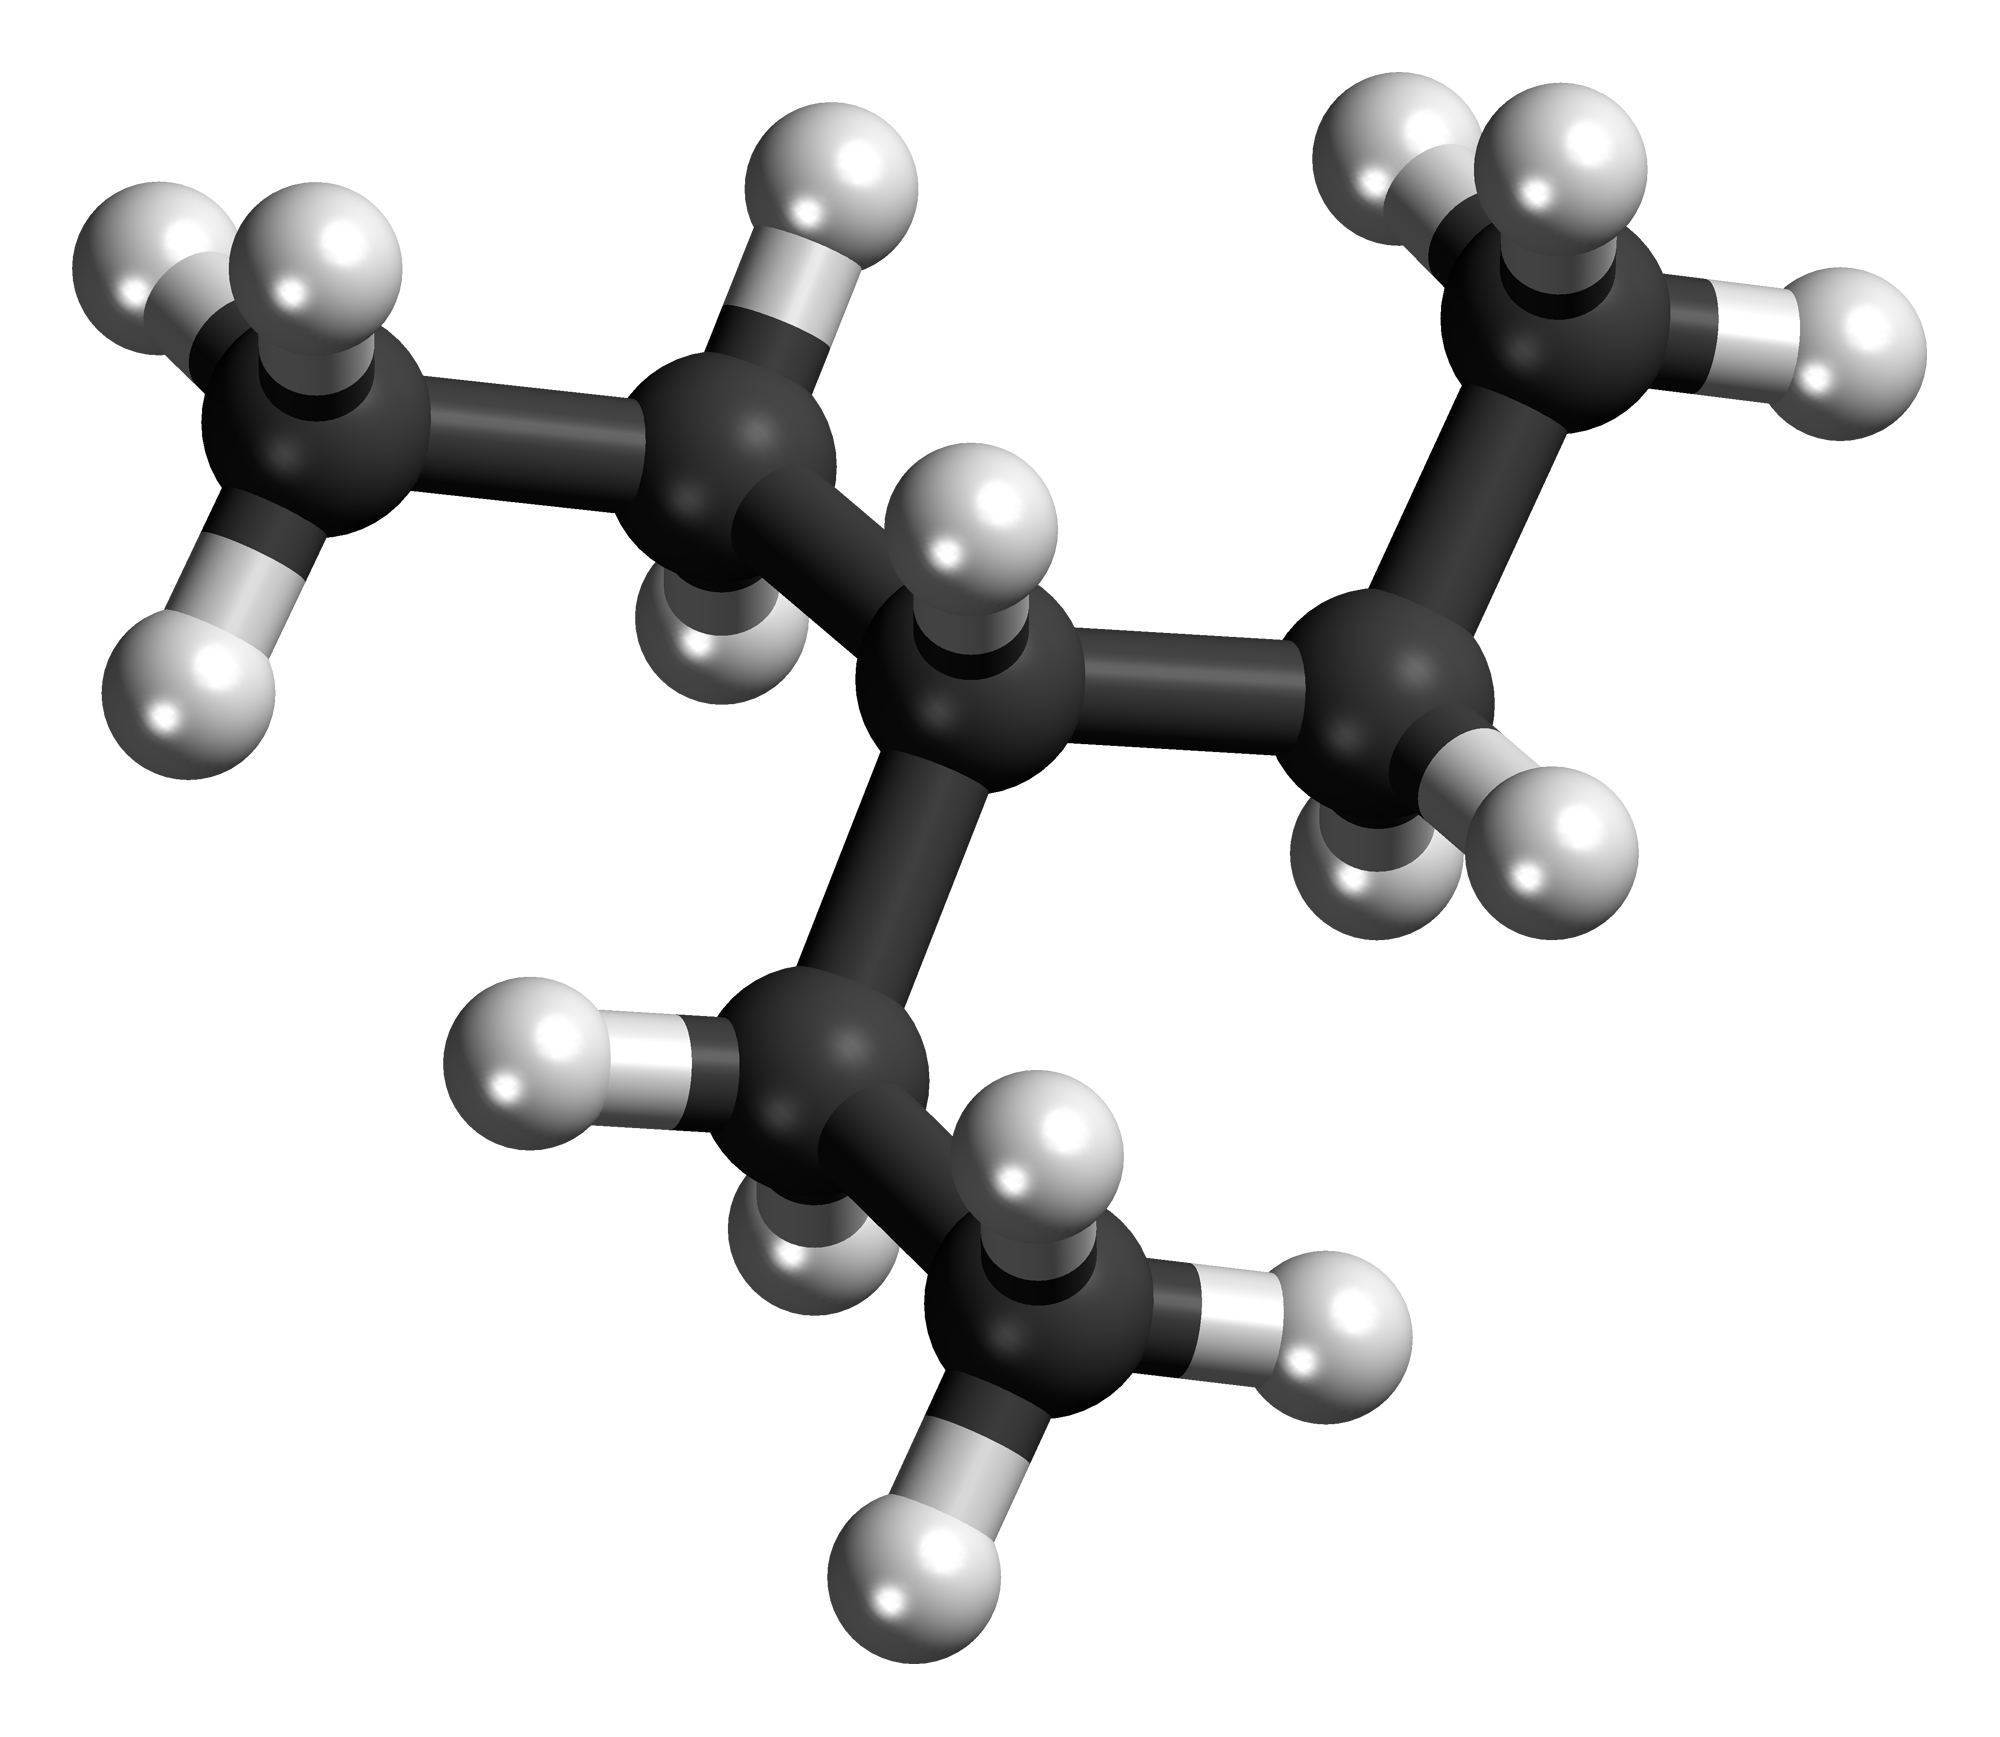 caffeine molecule - /science/